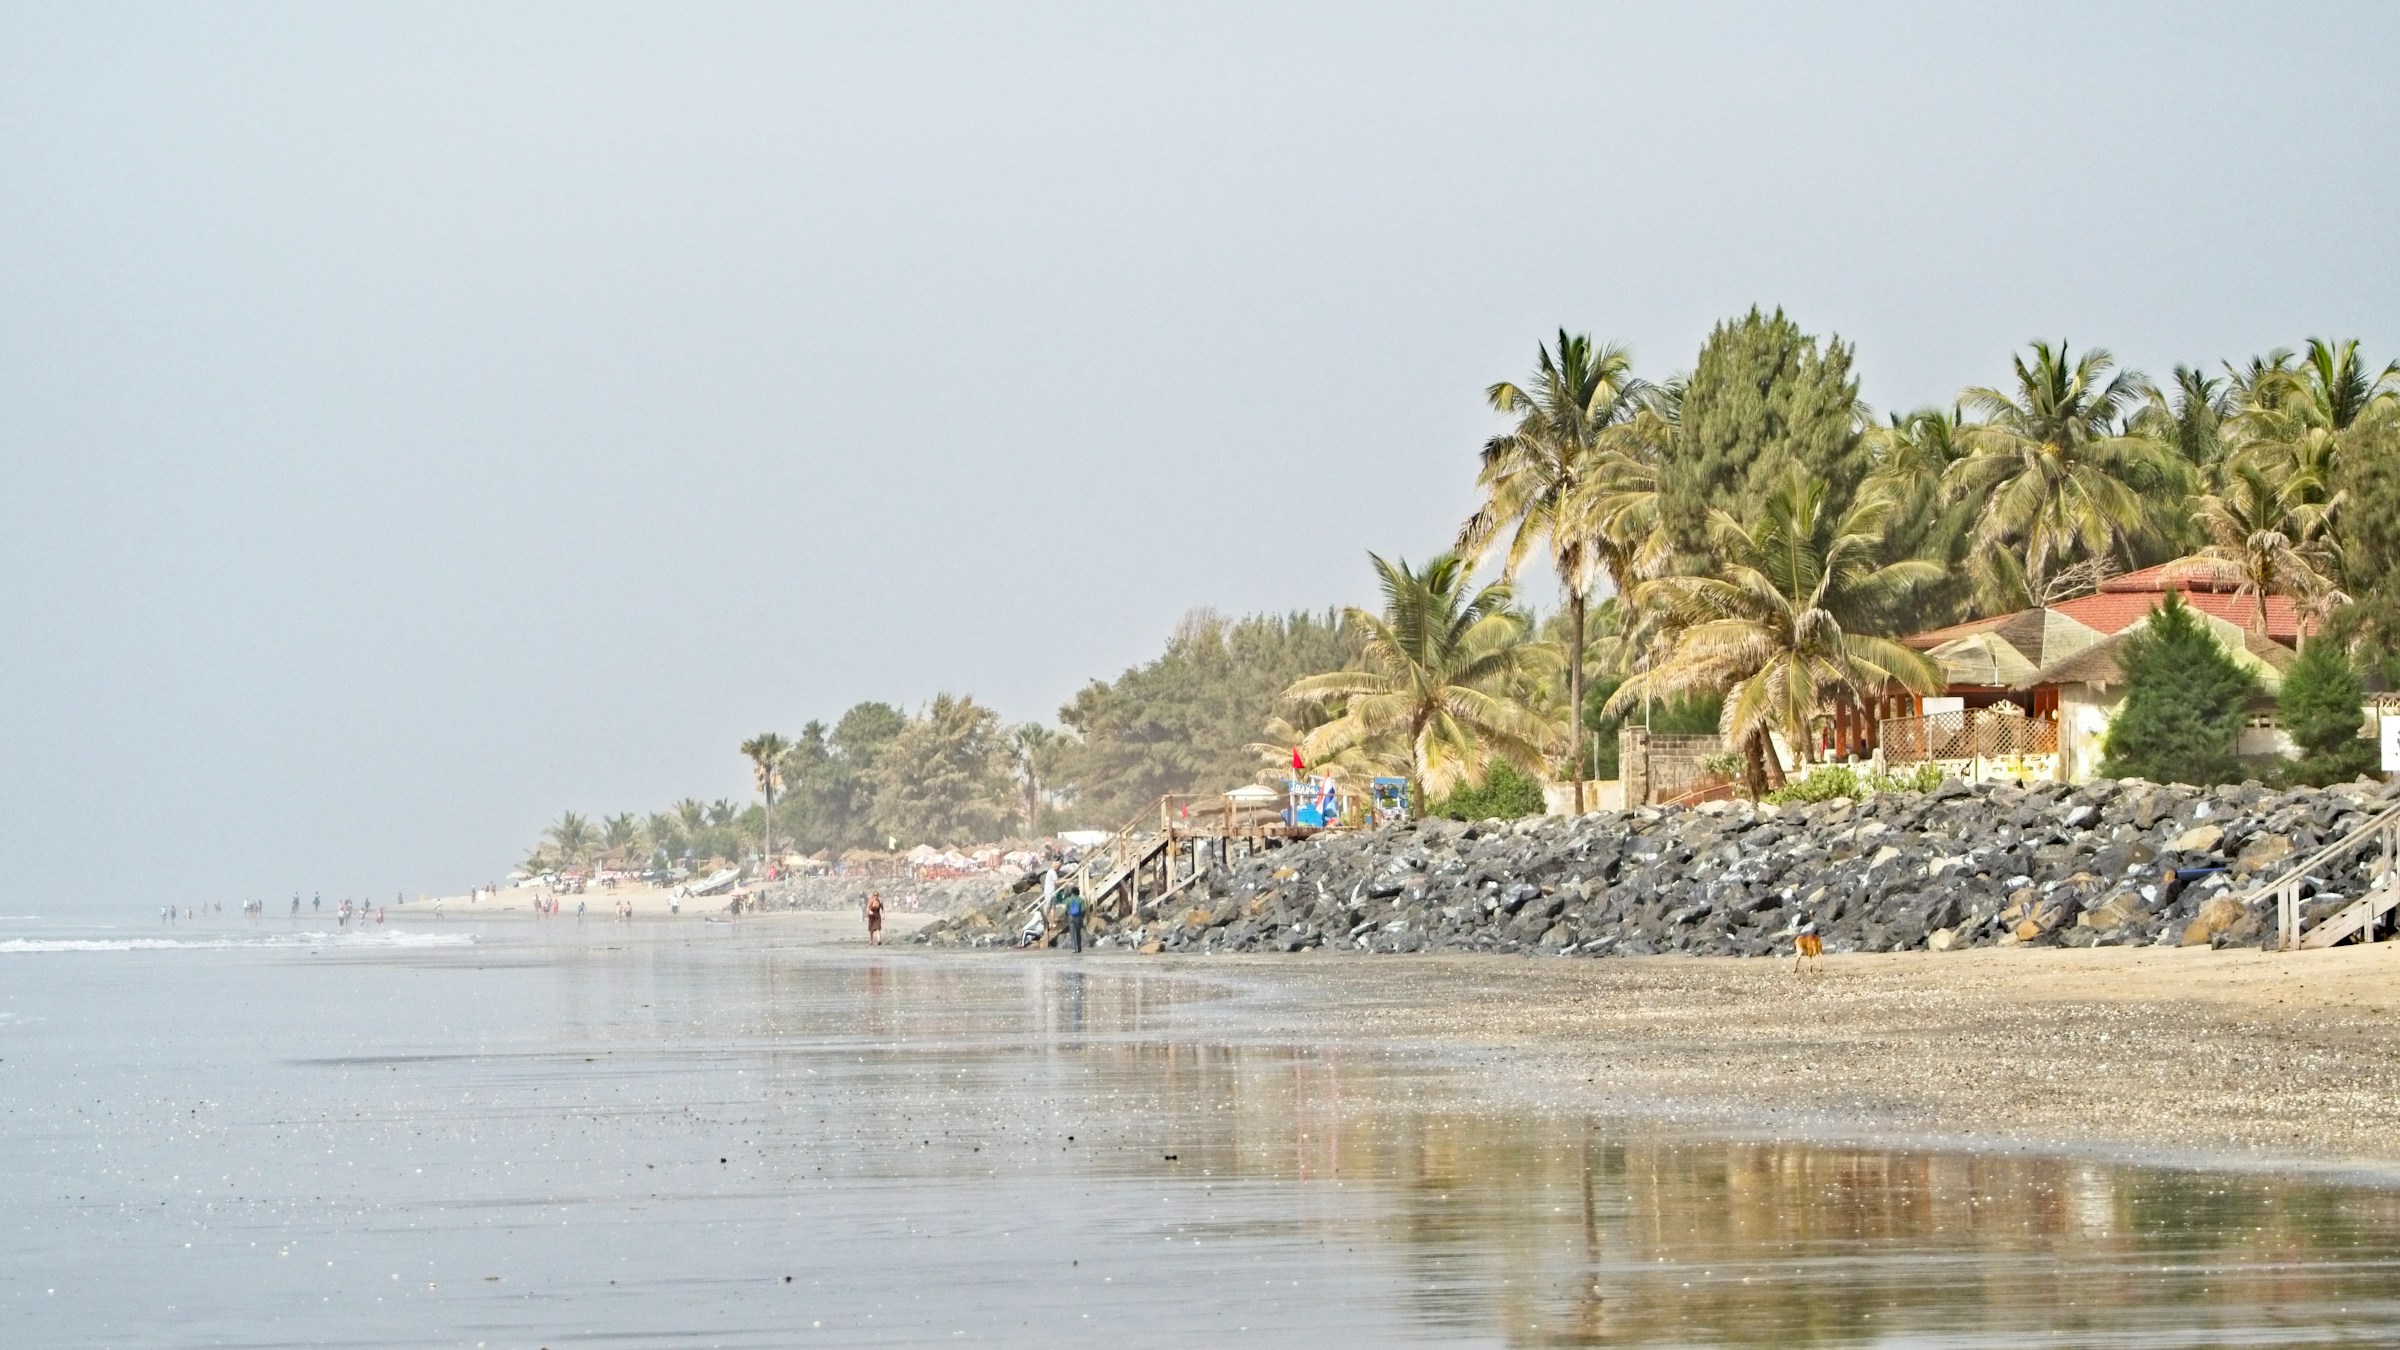 Långsträckt sandstrand med reflekterande våt sand, omgiven av palmer och en stenig strandkant, under en disig himmel i Gambia.